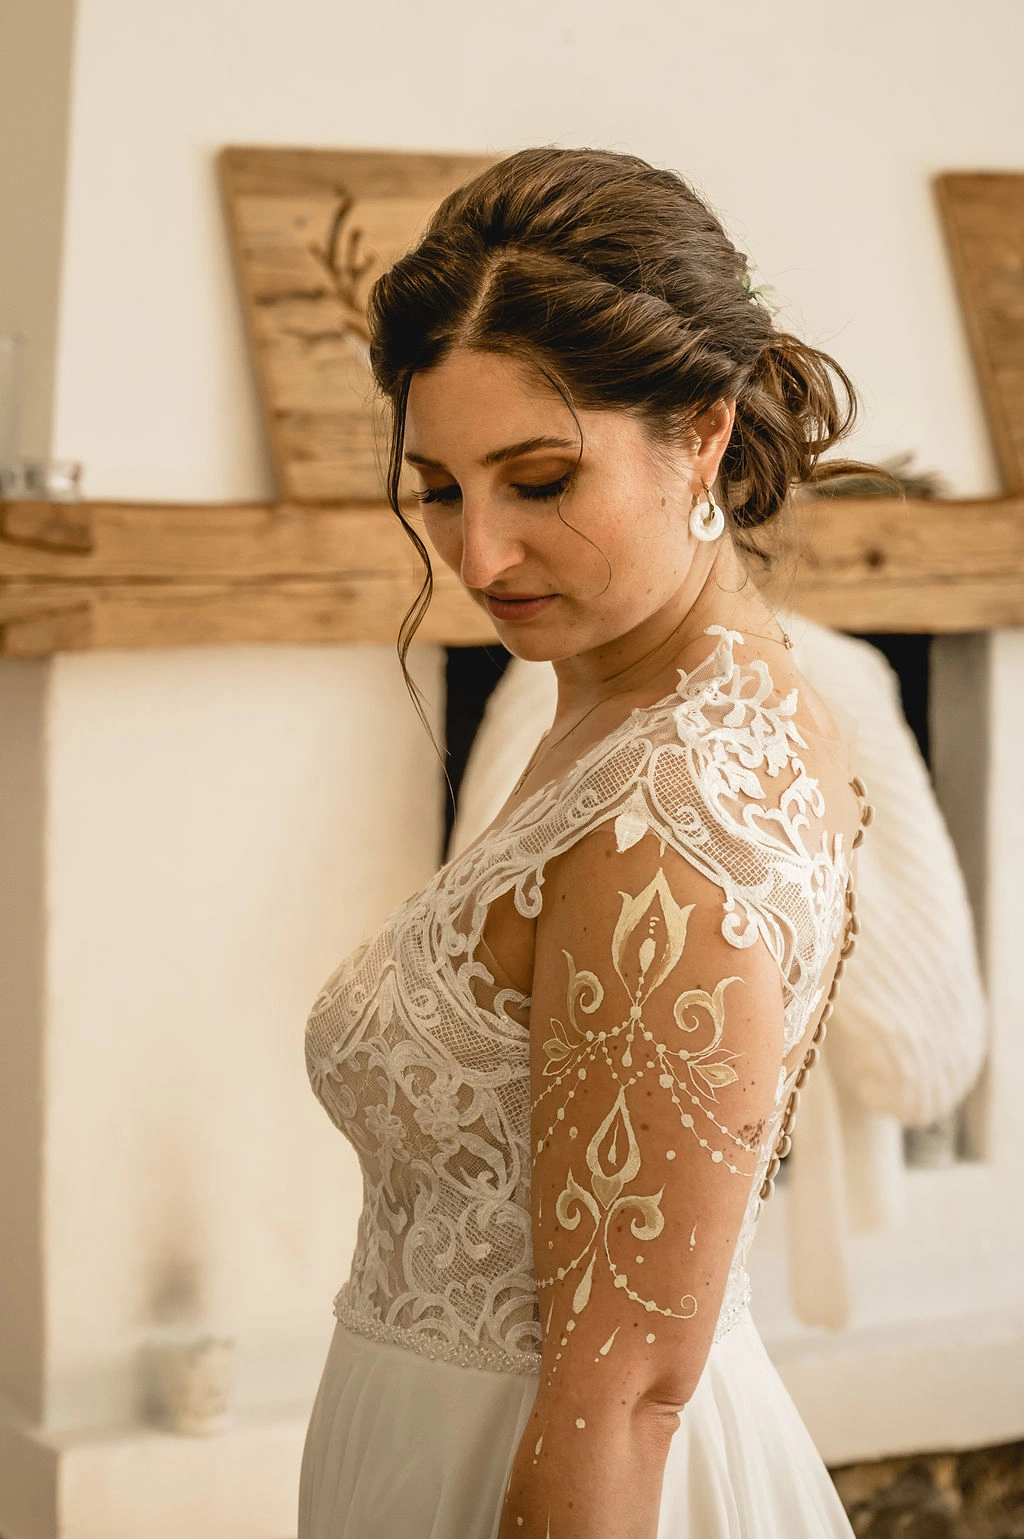 Braut mit Hochsteckfrisur und Hochzeits Make-up im weißen Kleid. Haare und Make-up von Denise Drahtmueller